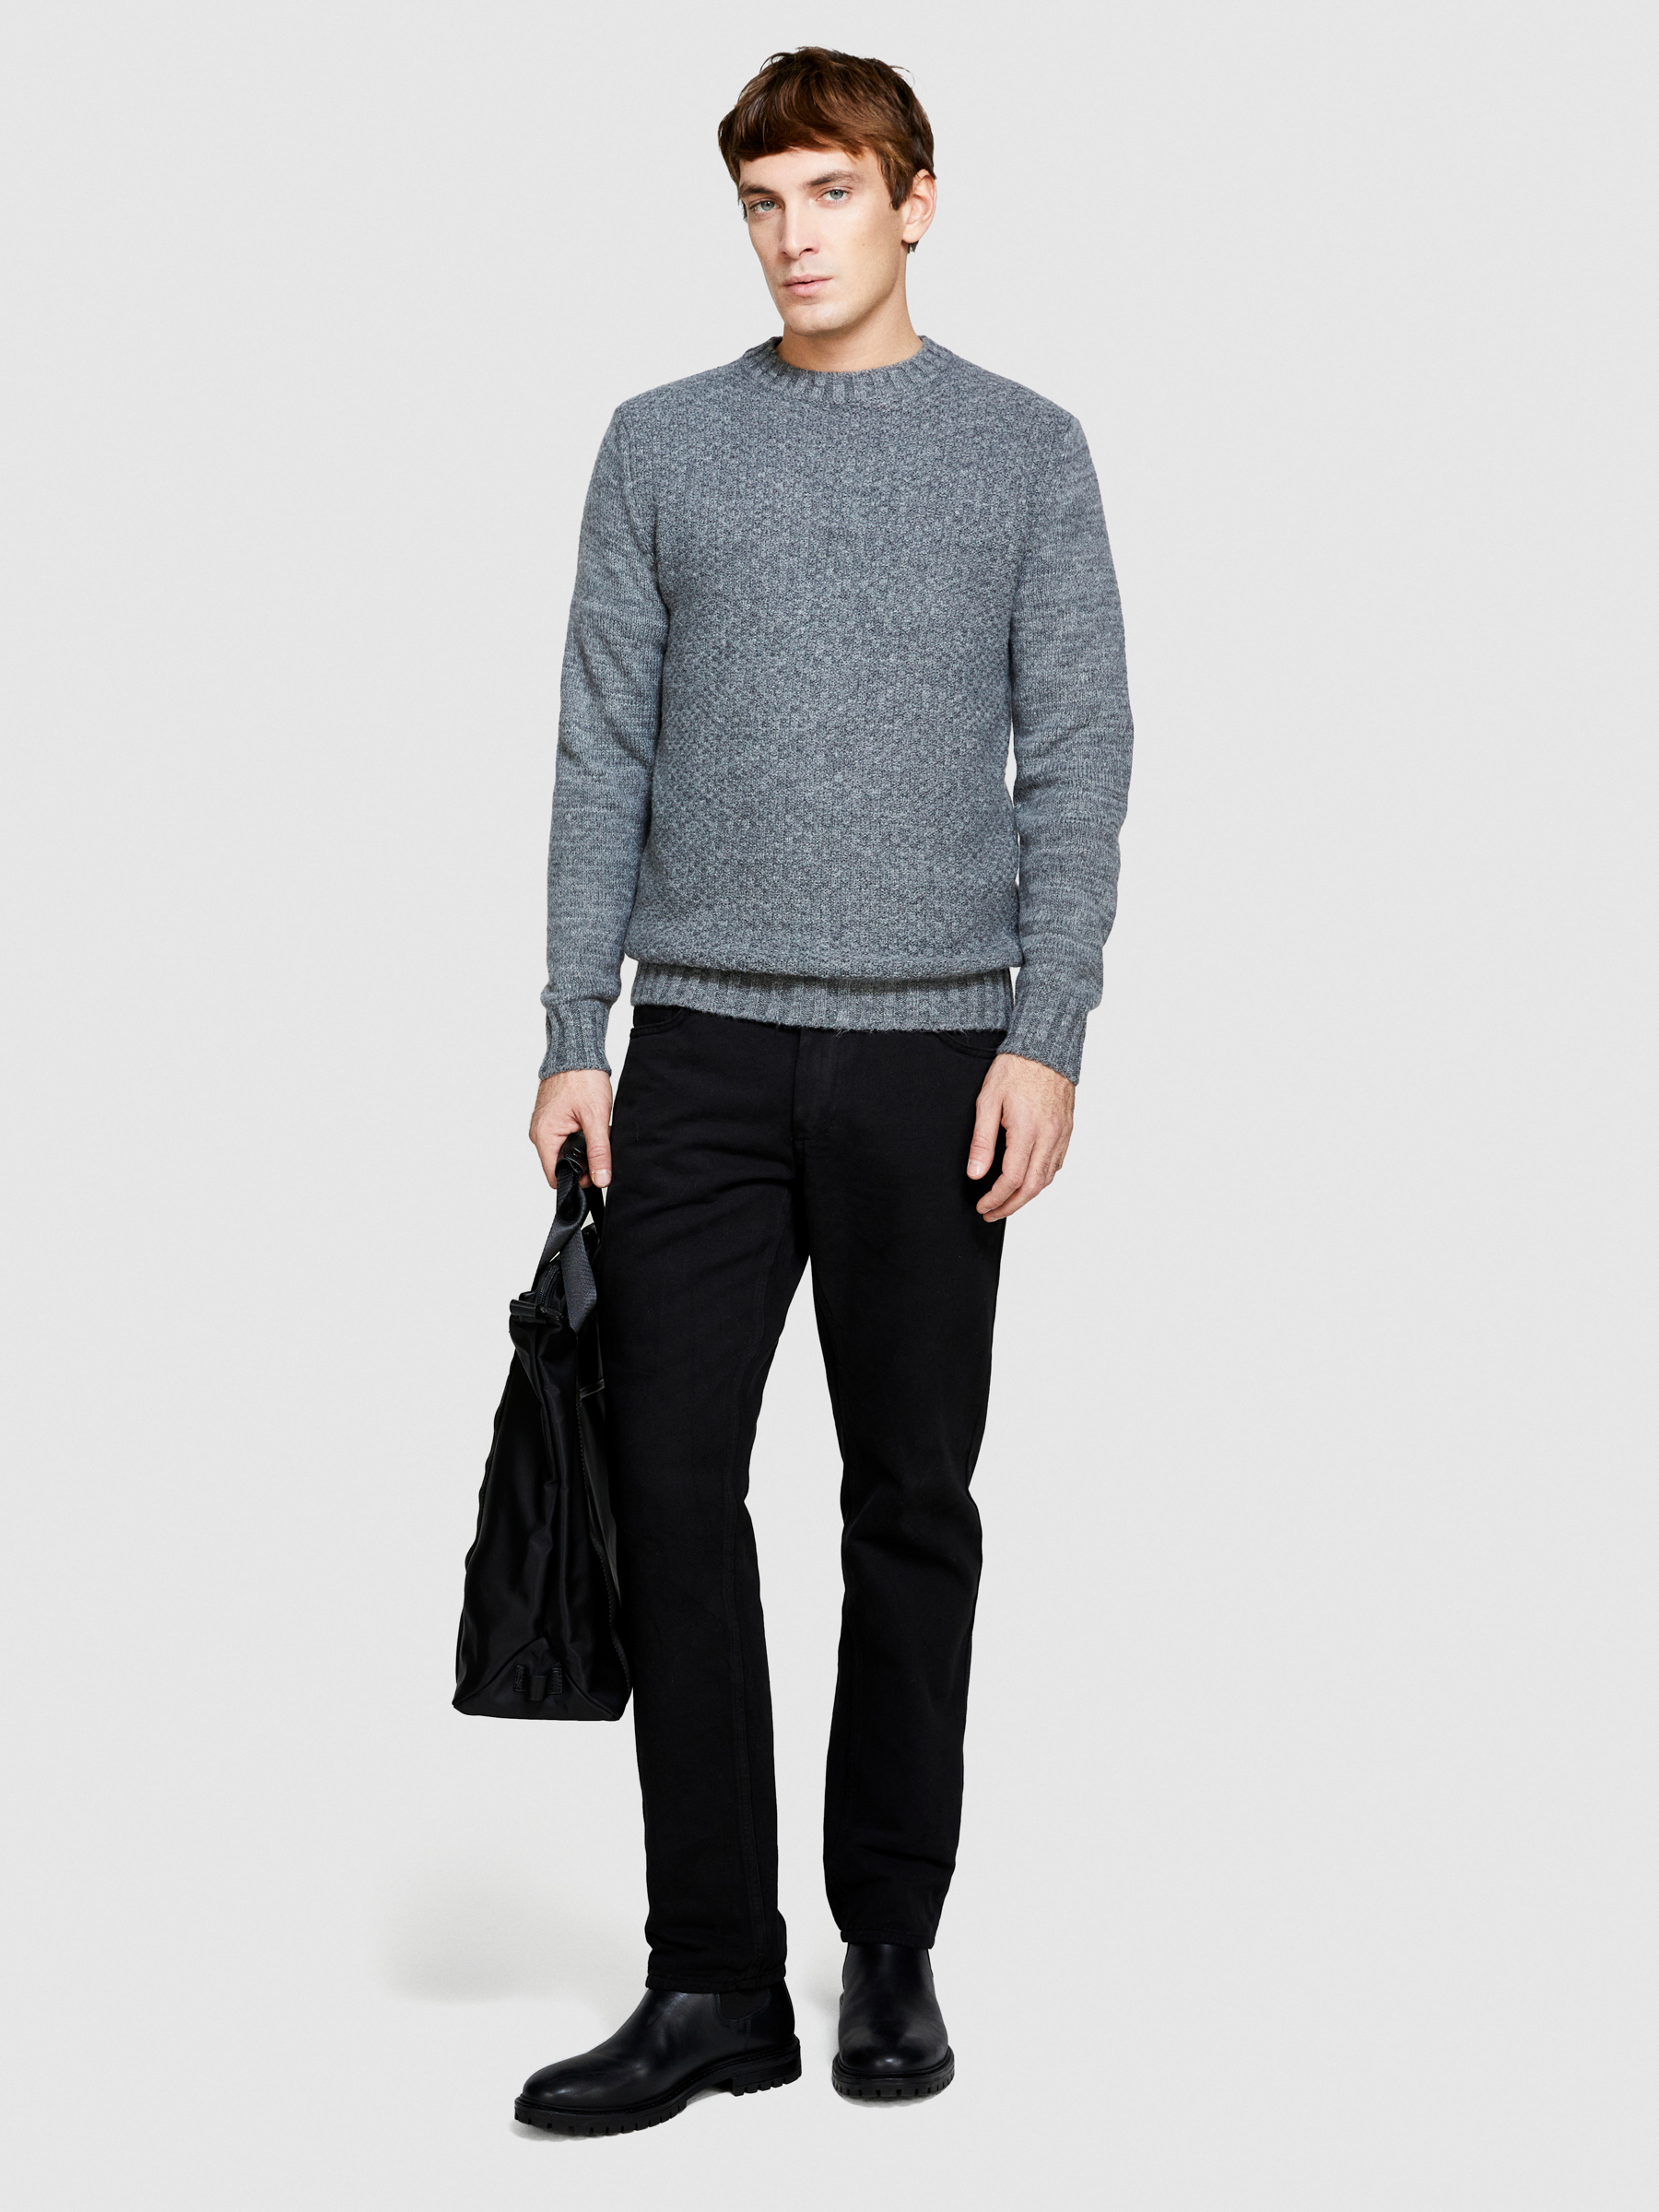 Sisley - Knit Sweater, Man, Gray, Size: XL